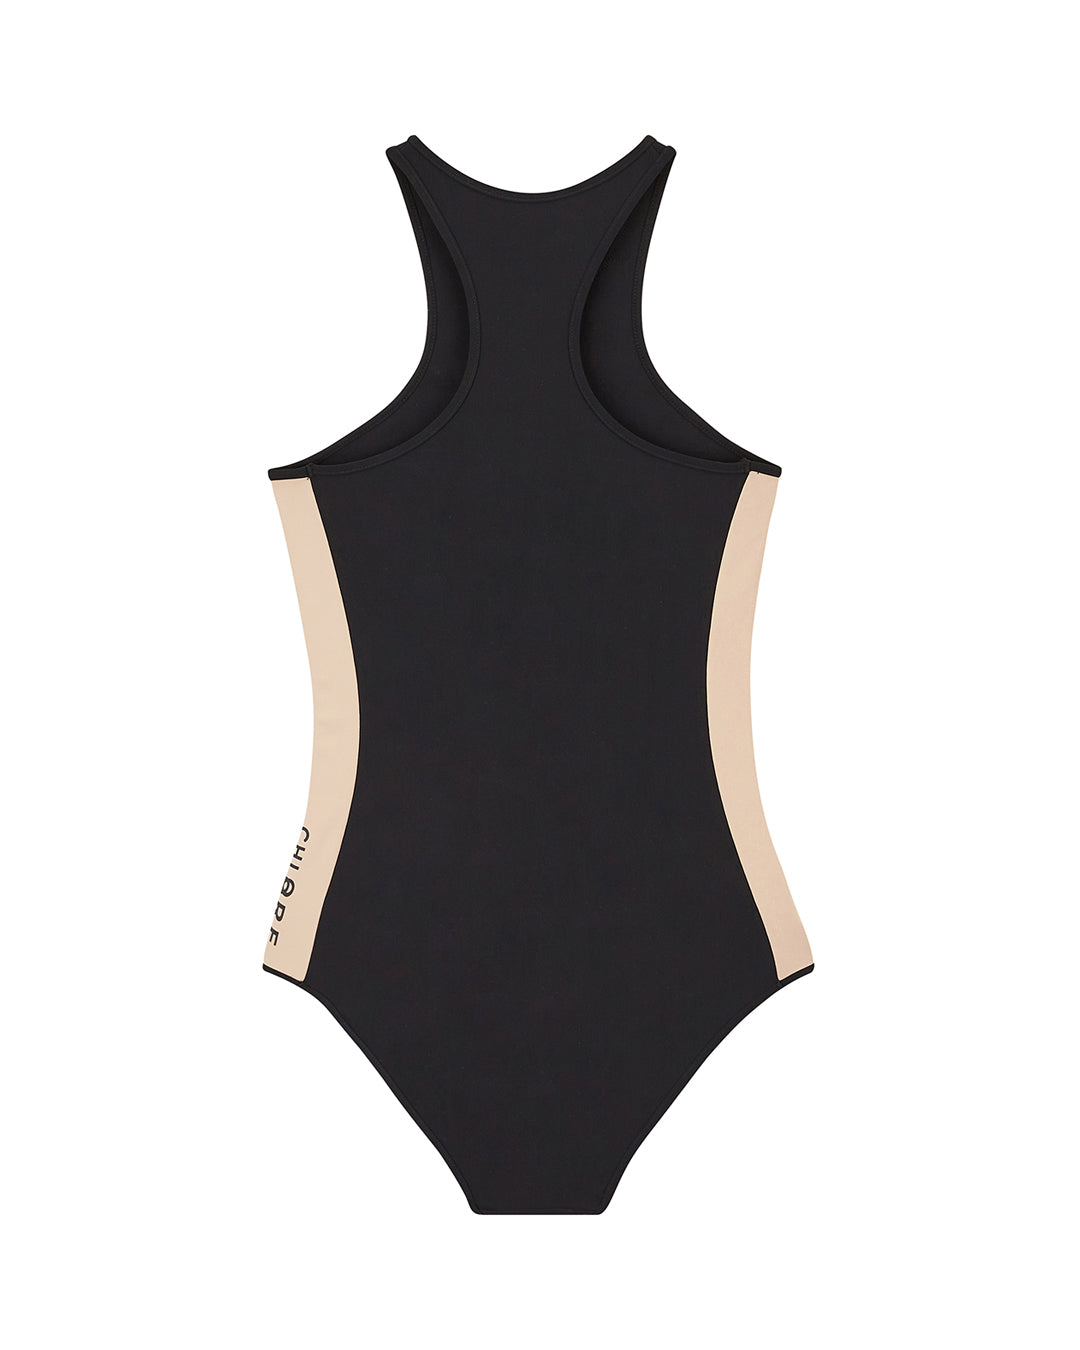 BONDI Racerback Swimsuit - CHLORE X PAUL KUSENI